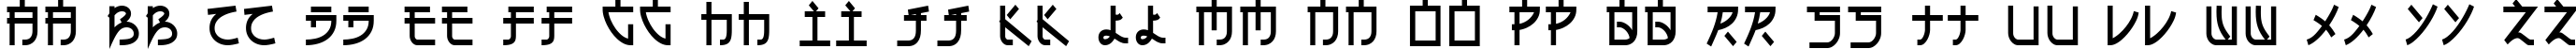 Пример написания английского алфавита шрифтом Eh_cyr